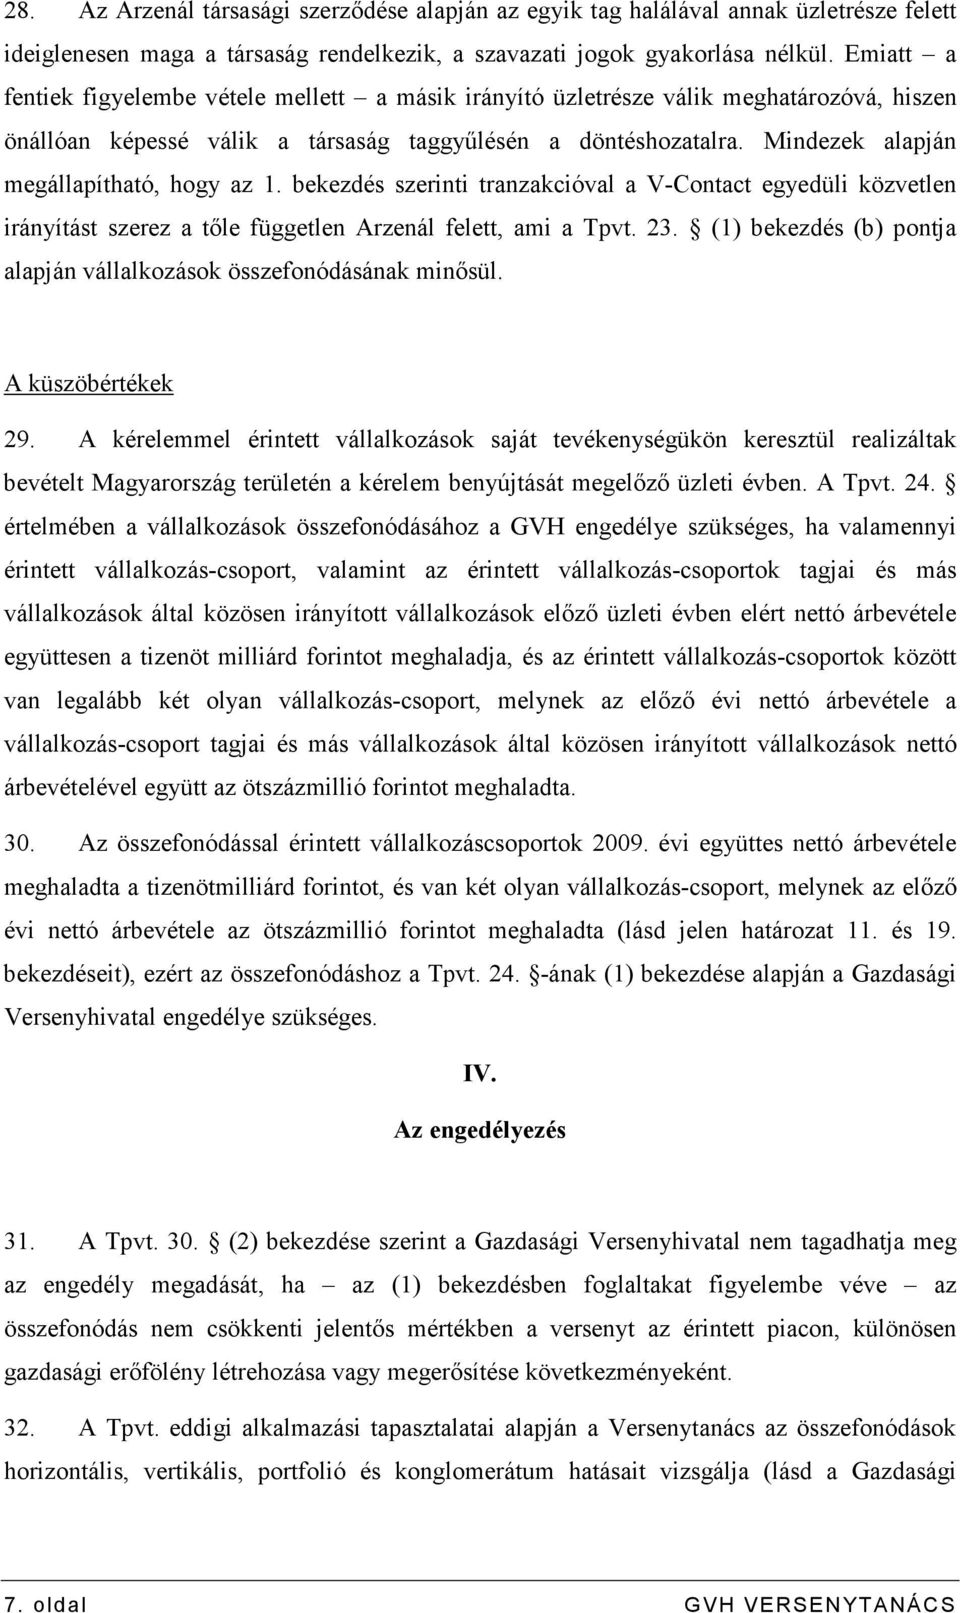 Mindezek alapján megállapítható, hogy az 1. bekezdés szerinti tranzakcióval a V-Contact egyedüli közvetlen irányítást szerez a tıle független Arzenál felett, ami a Tpvt. 23.